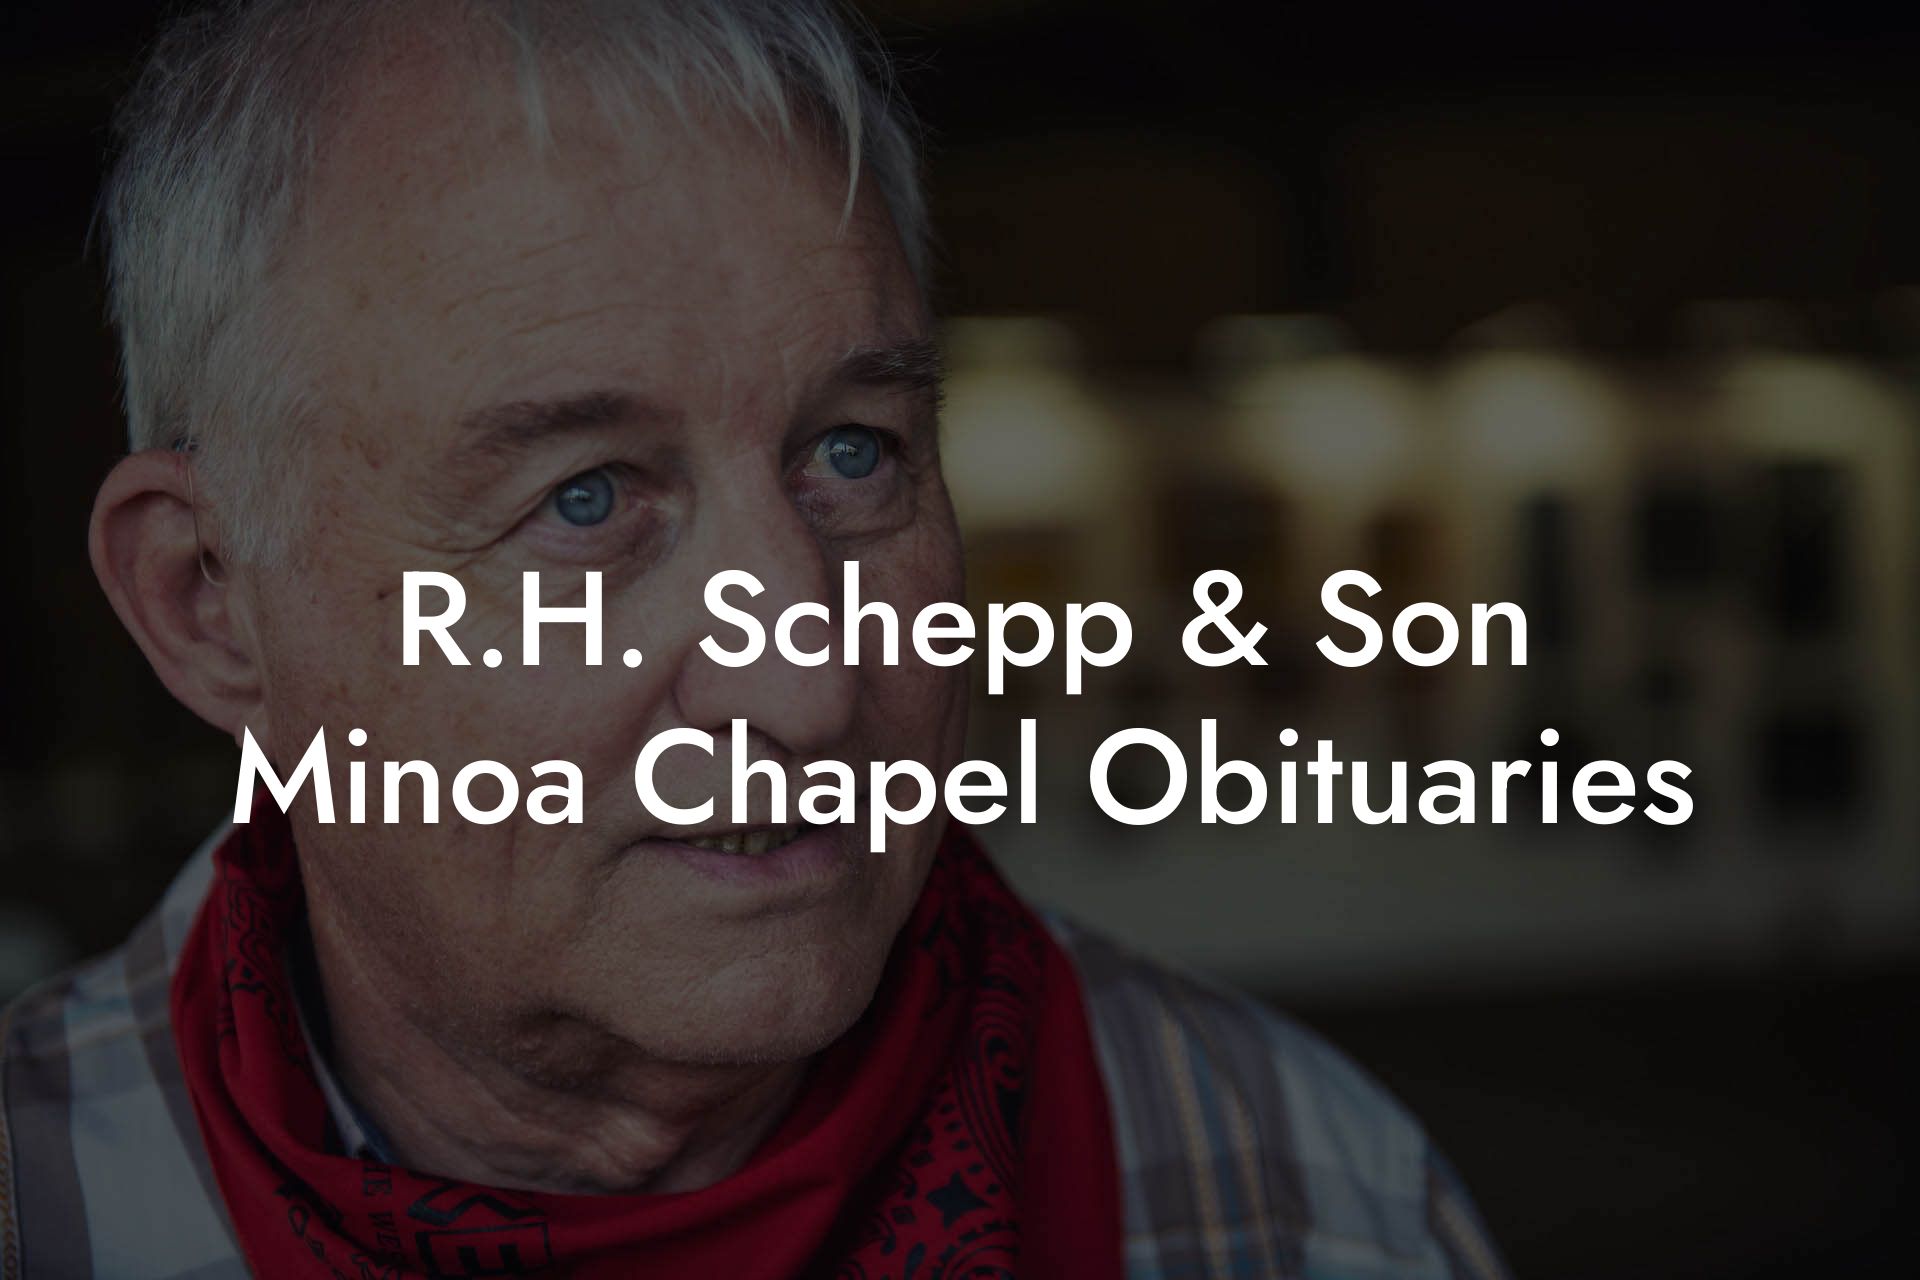 R.H. Schepp & Son Minoa Chapel Obituaries